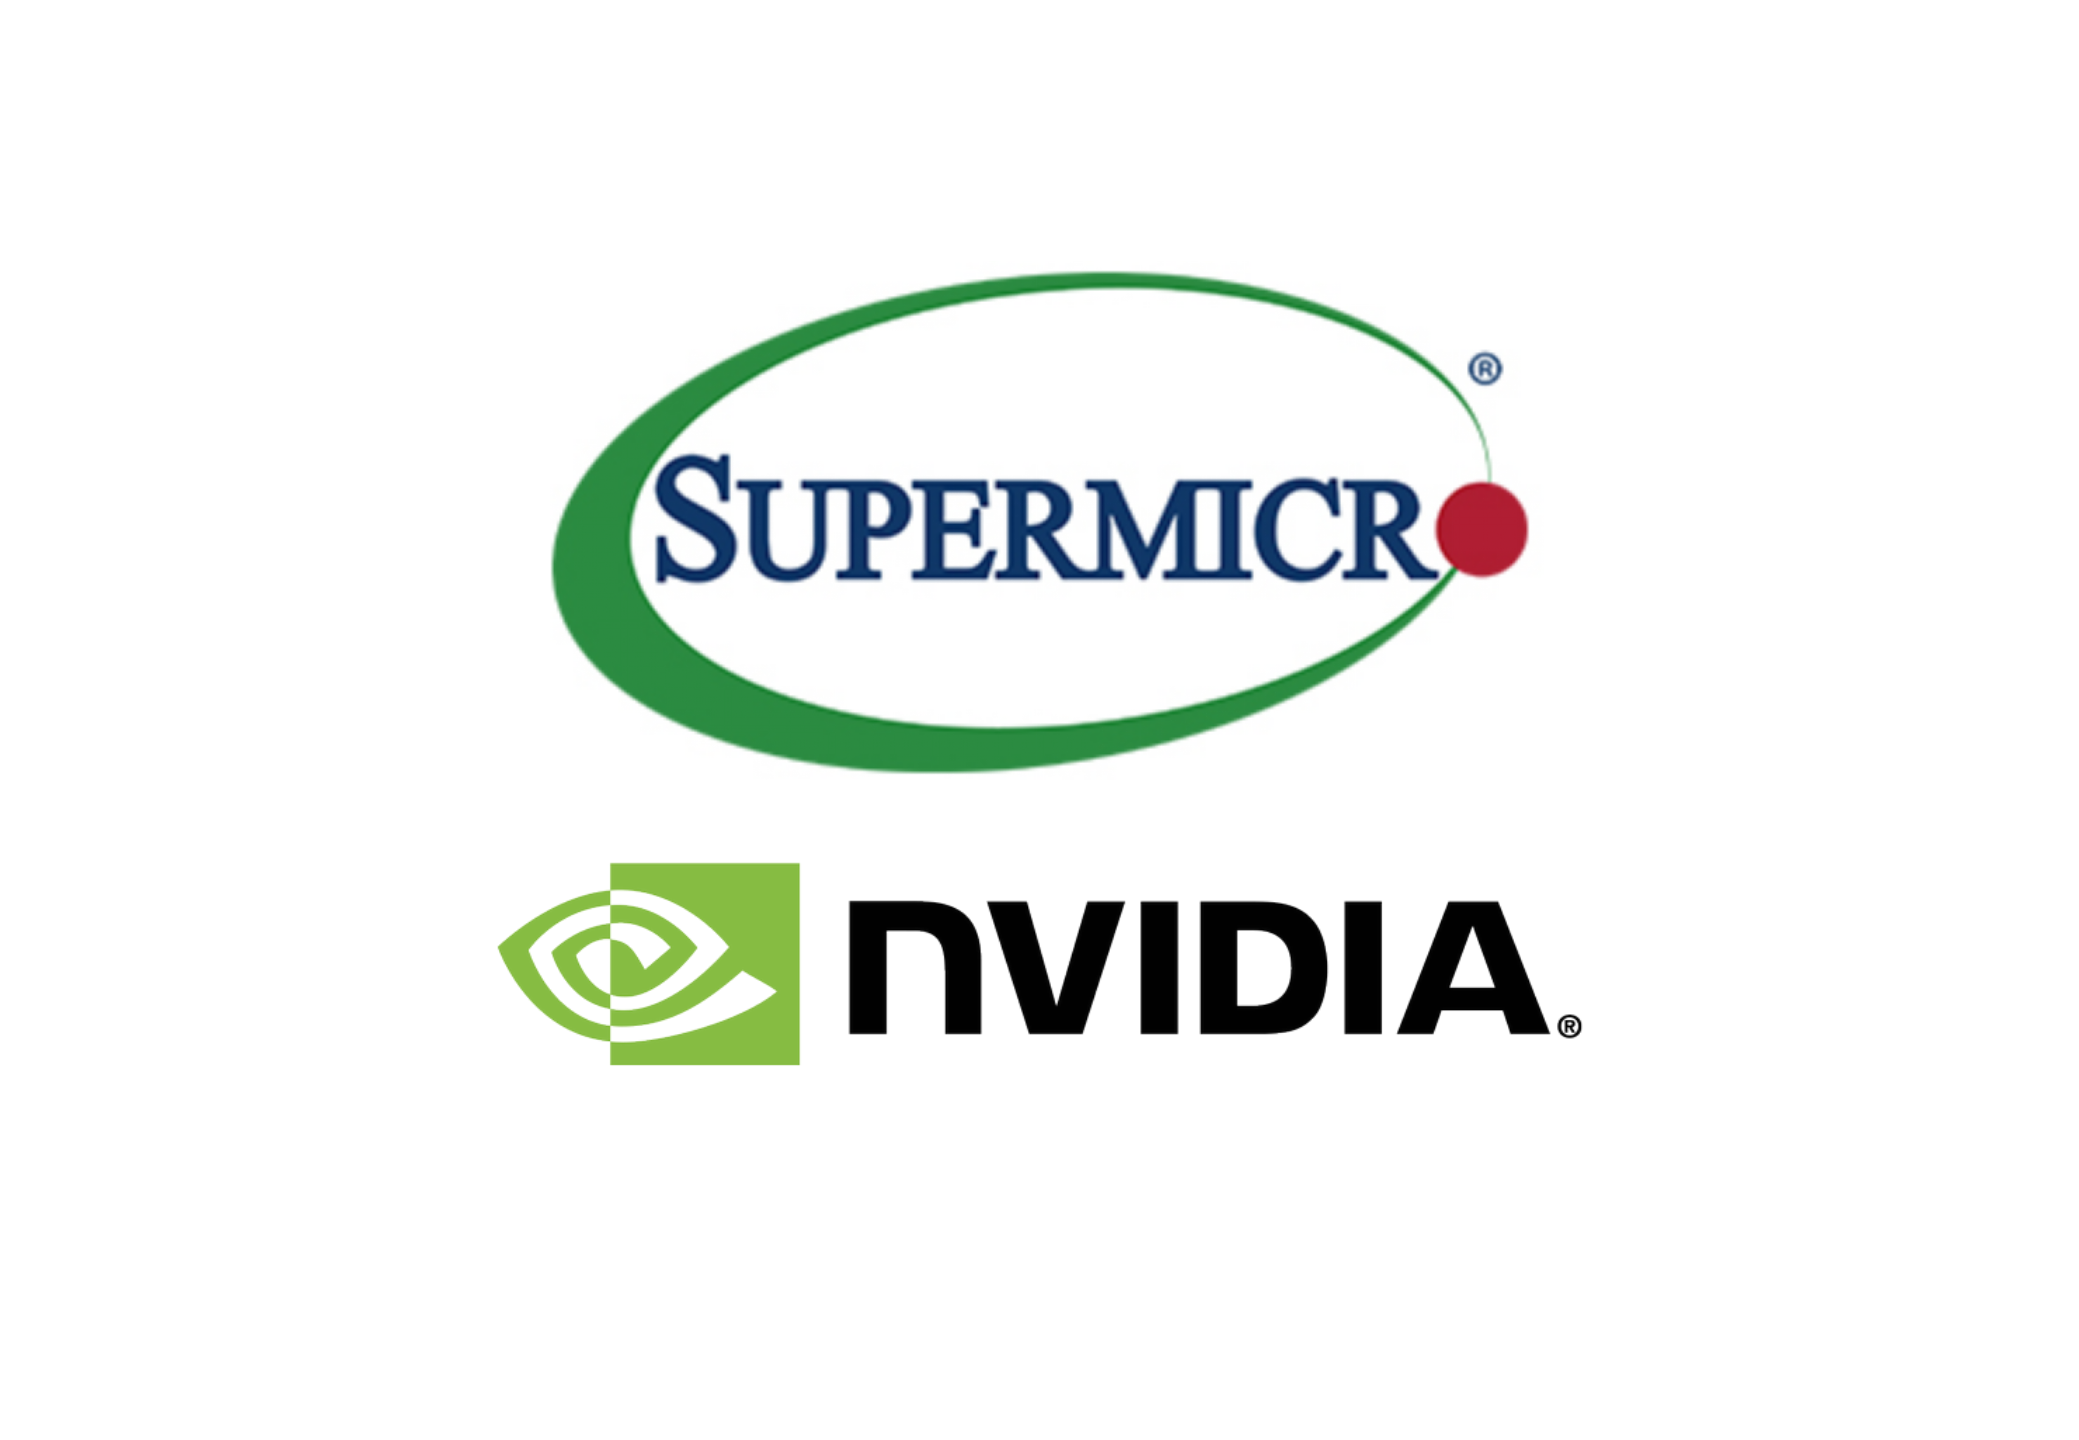 849-bps-webinar-logos-supermicronvidia-diciembre-202101.png